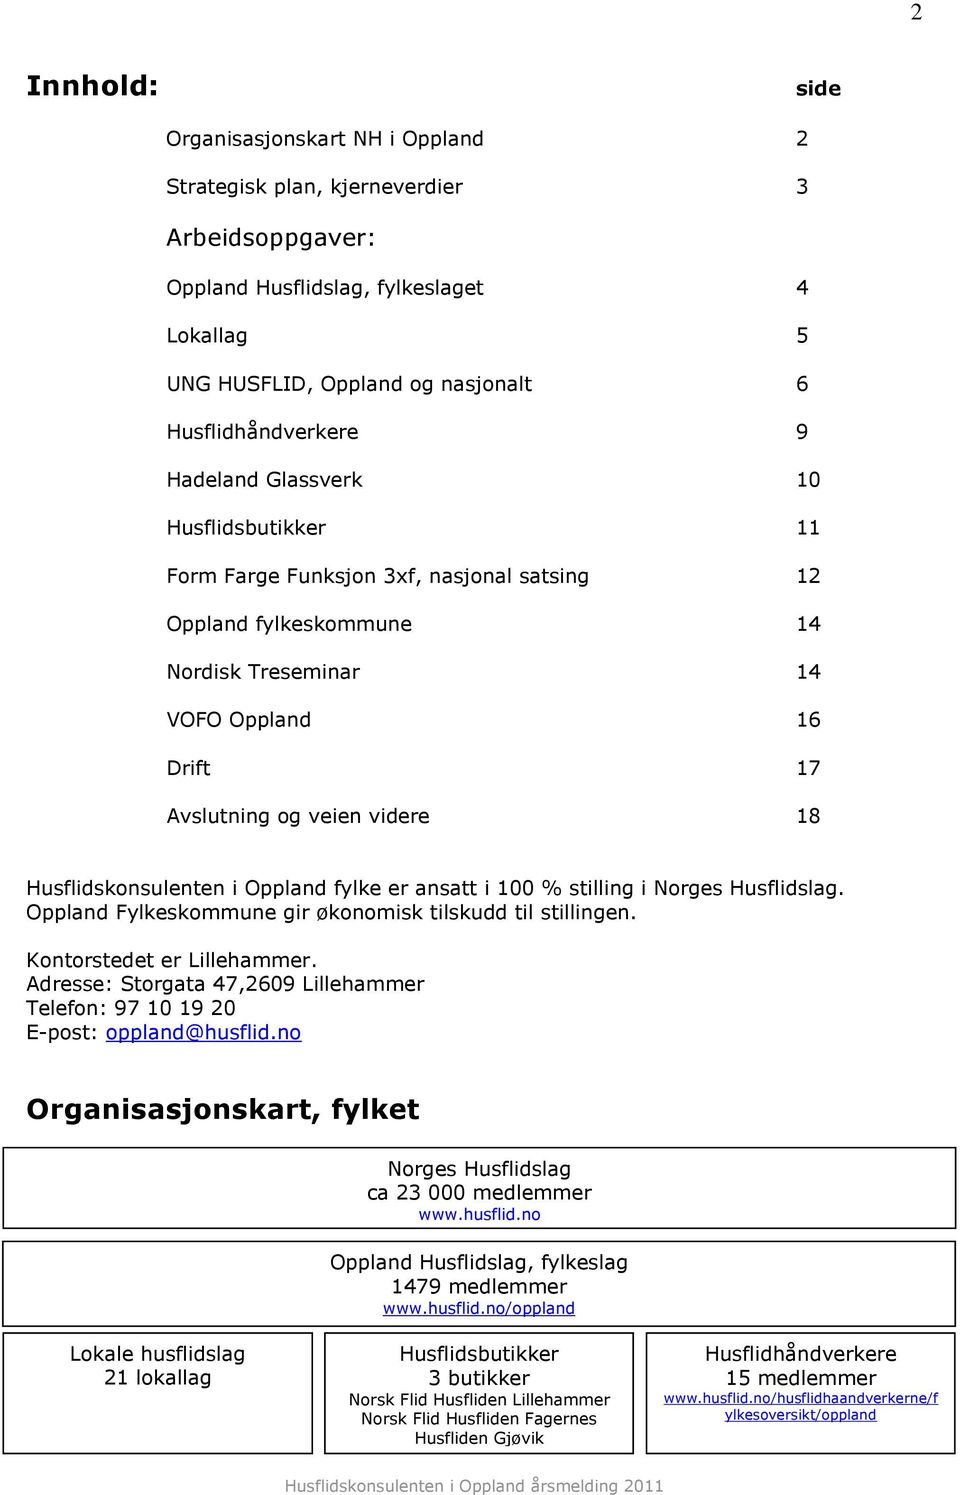 Husflidskonsulenten i Oppland fylke er ansatt i 100 % stilling i Norges Husflidslag. Oppland Fylkeskommune gir økonomisk tilskudd til stillingen. Kontorstedet er Lillehammer.